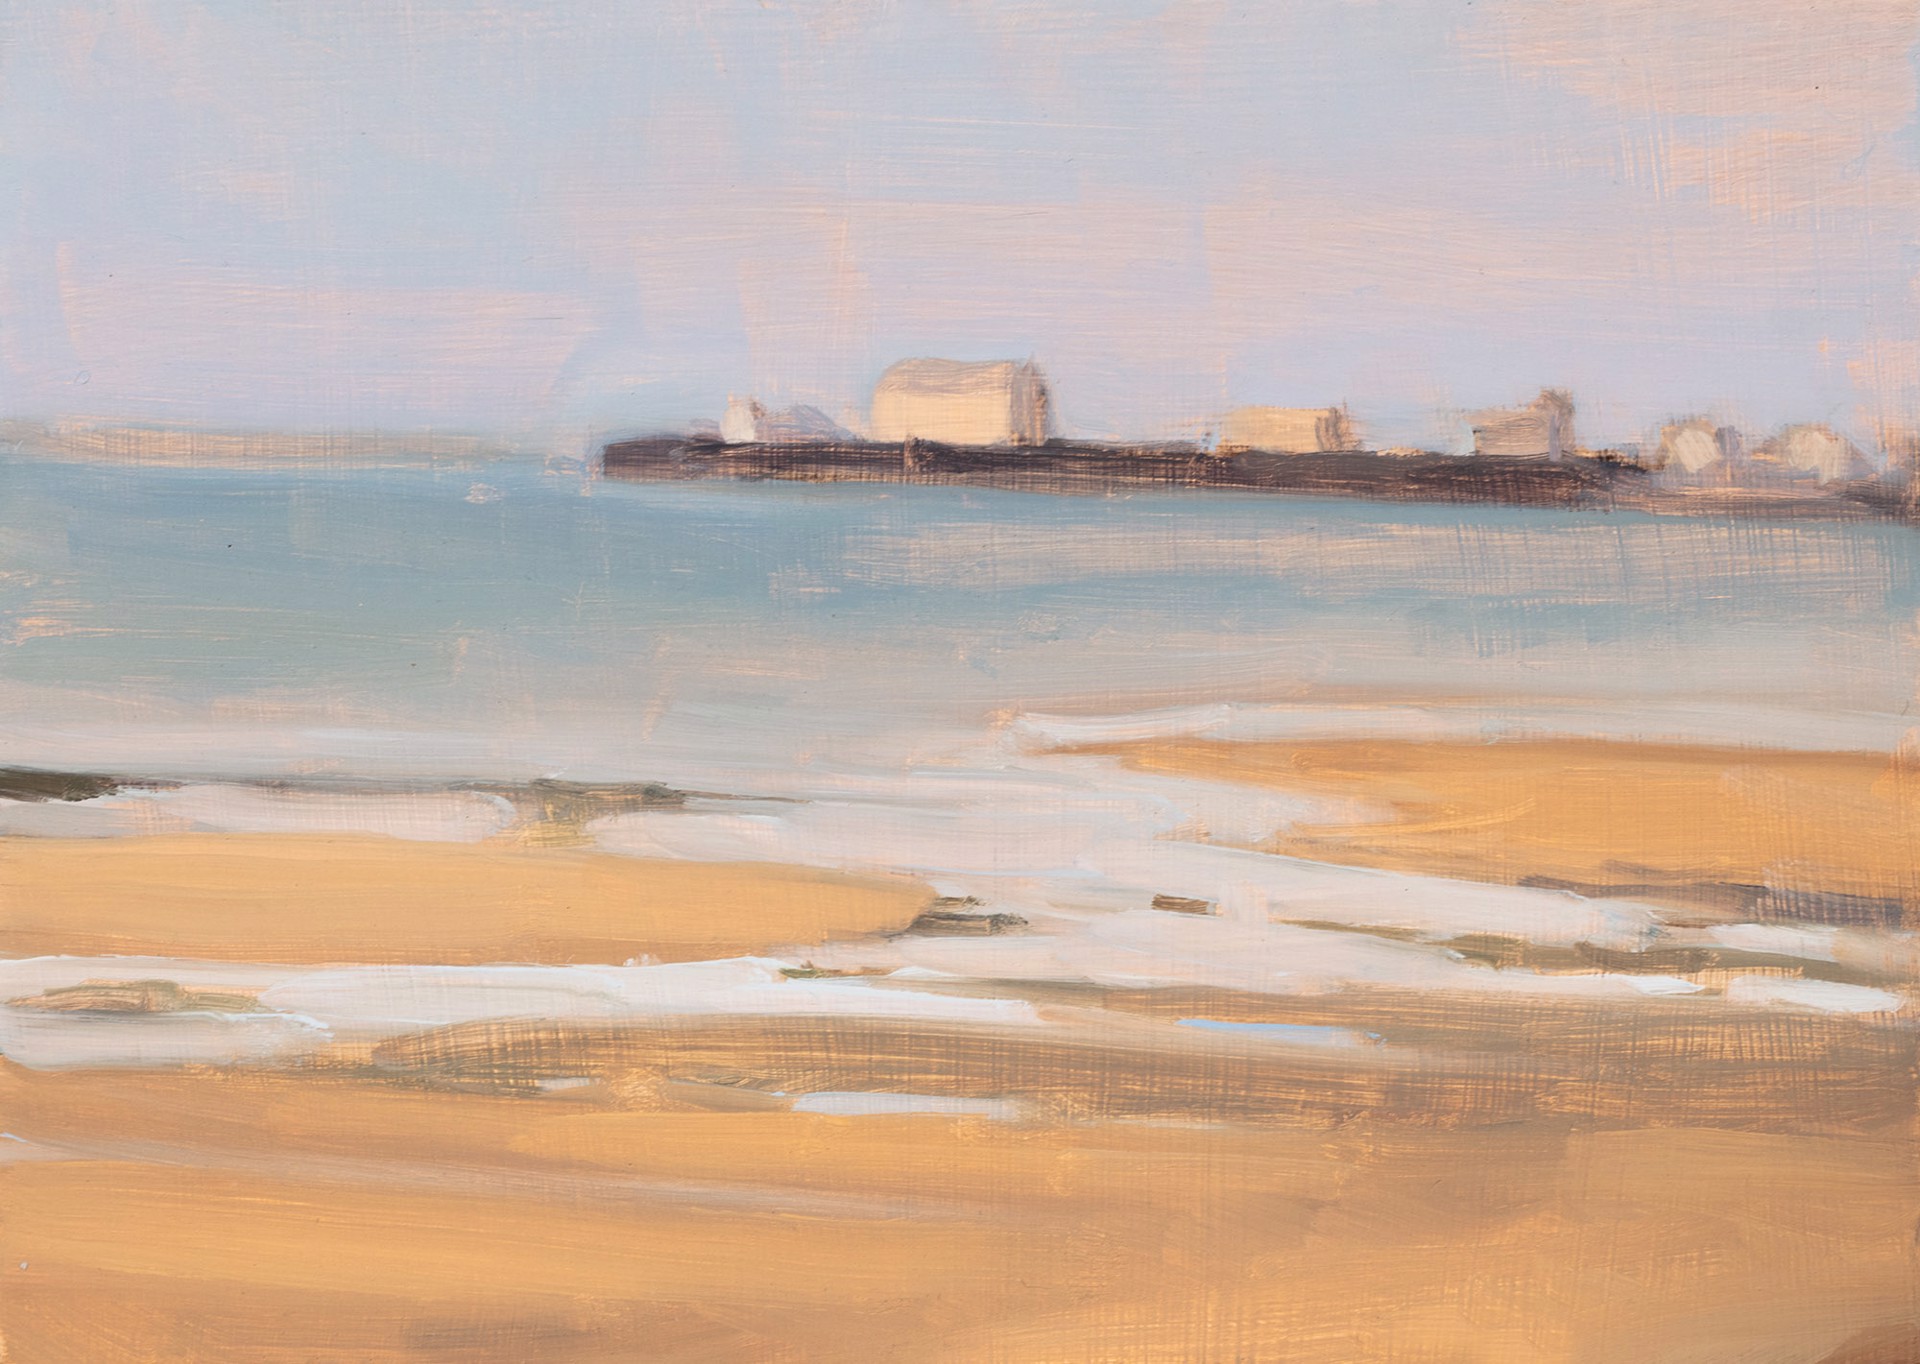 Wharf, Low Tide by Diana Horowitz